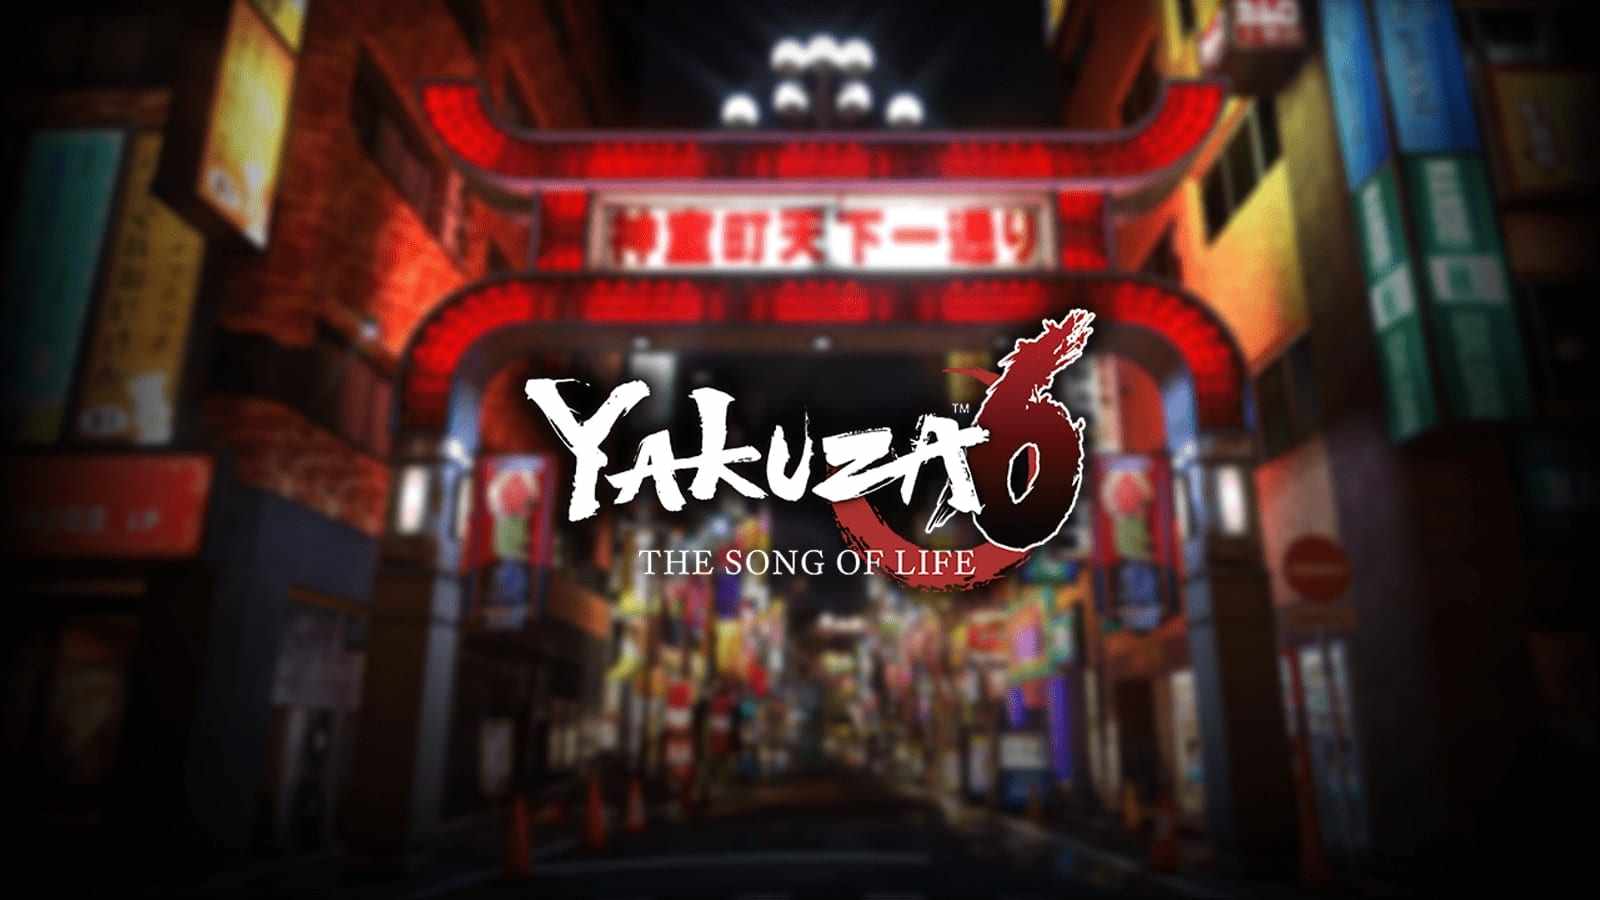 yakuza 6 the song of life listing thumb 01 ps4 us 03dec16 min